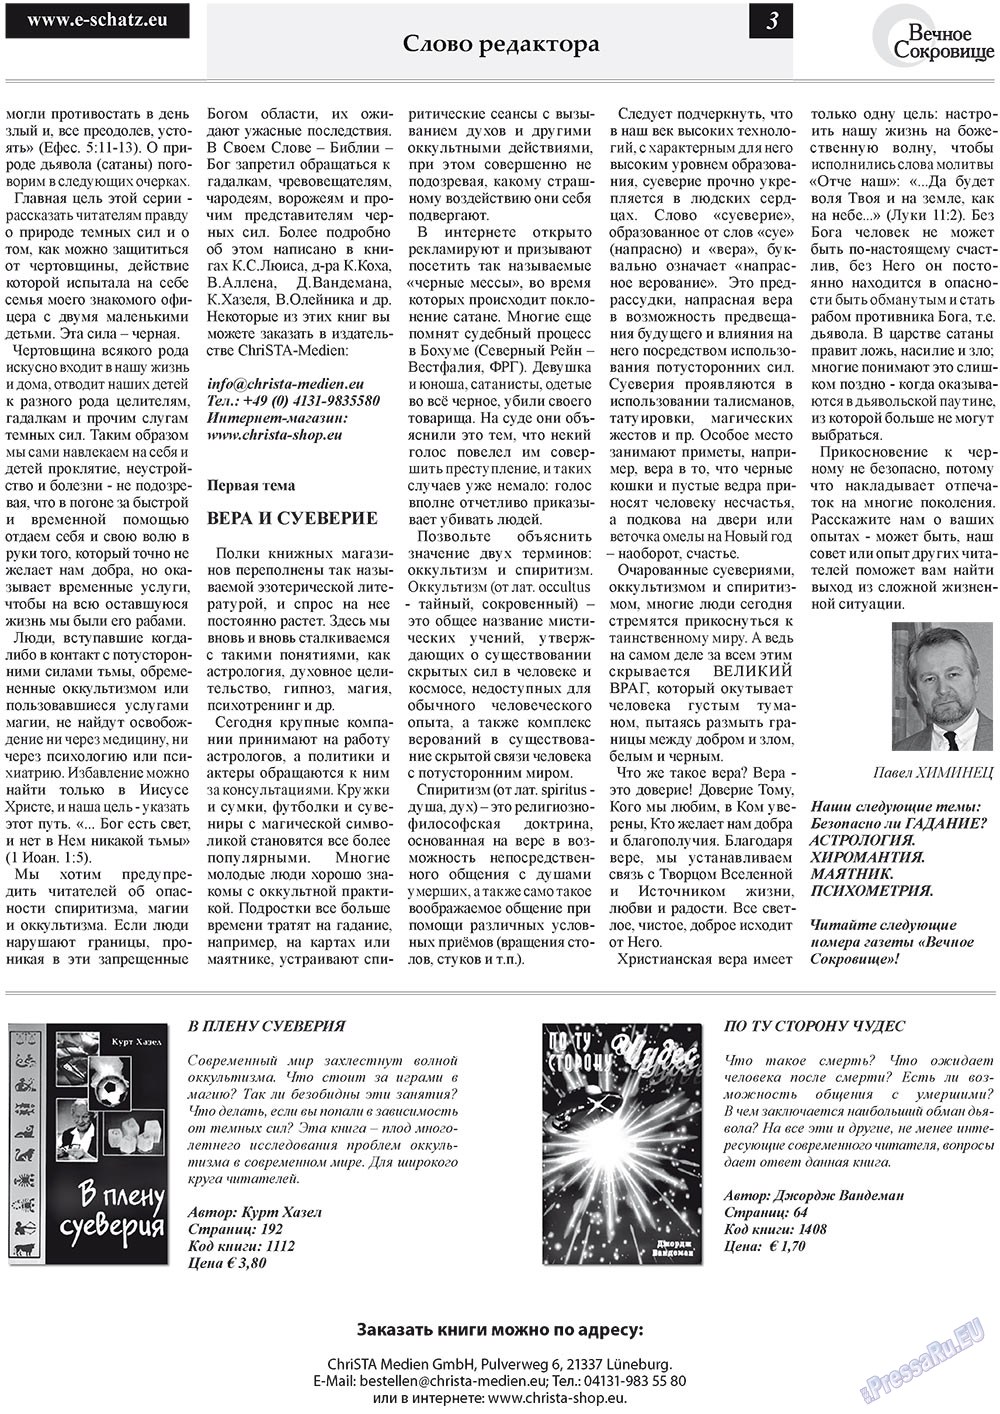 Вечное сокровище, газета. 2011 №4 стр.3